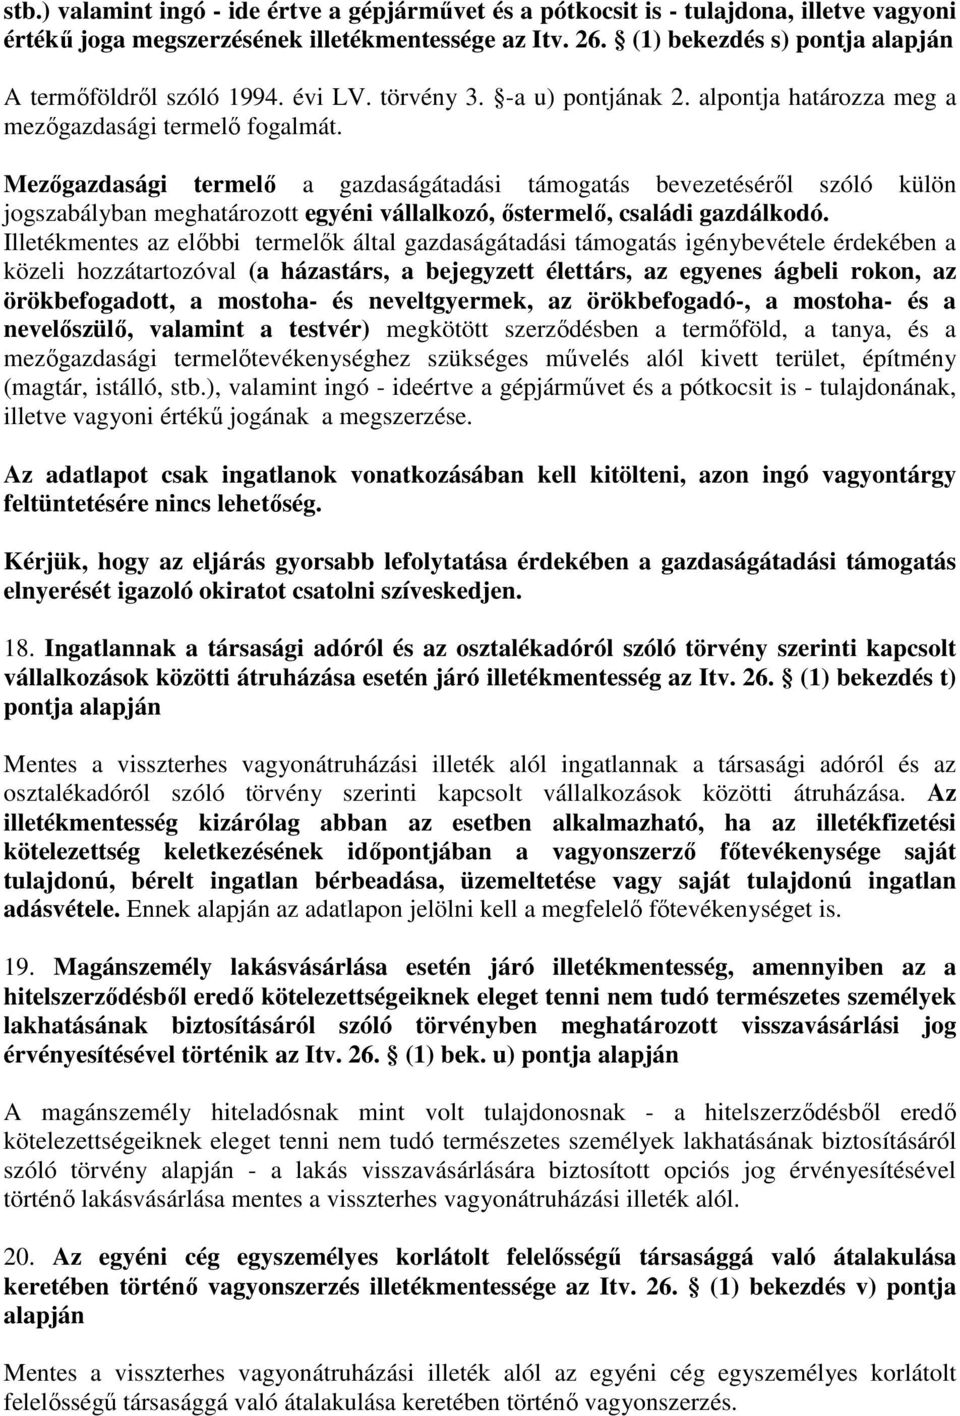 Mezıgazdasági termelı a gazdaságátadási támogatás bevezetésérıl szóló külön jogszabályban meghatározott egyéni vállalkozó, ıstermelı, családi gazdálkodó.